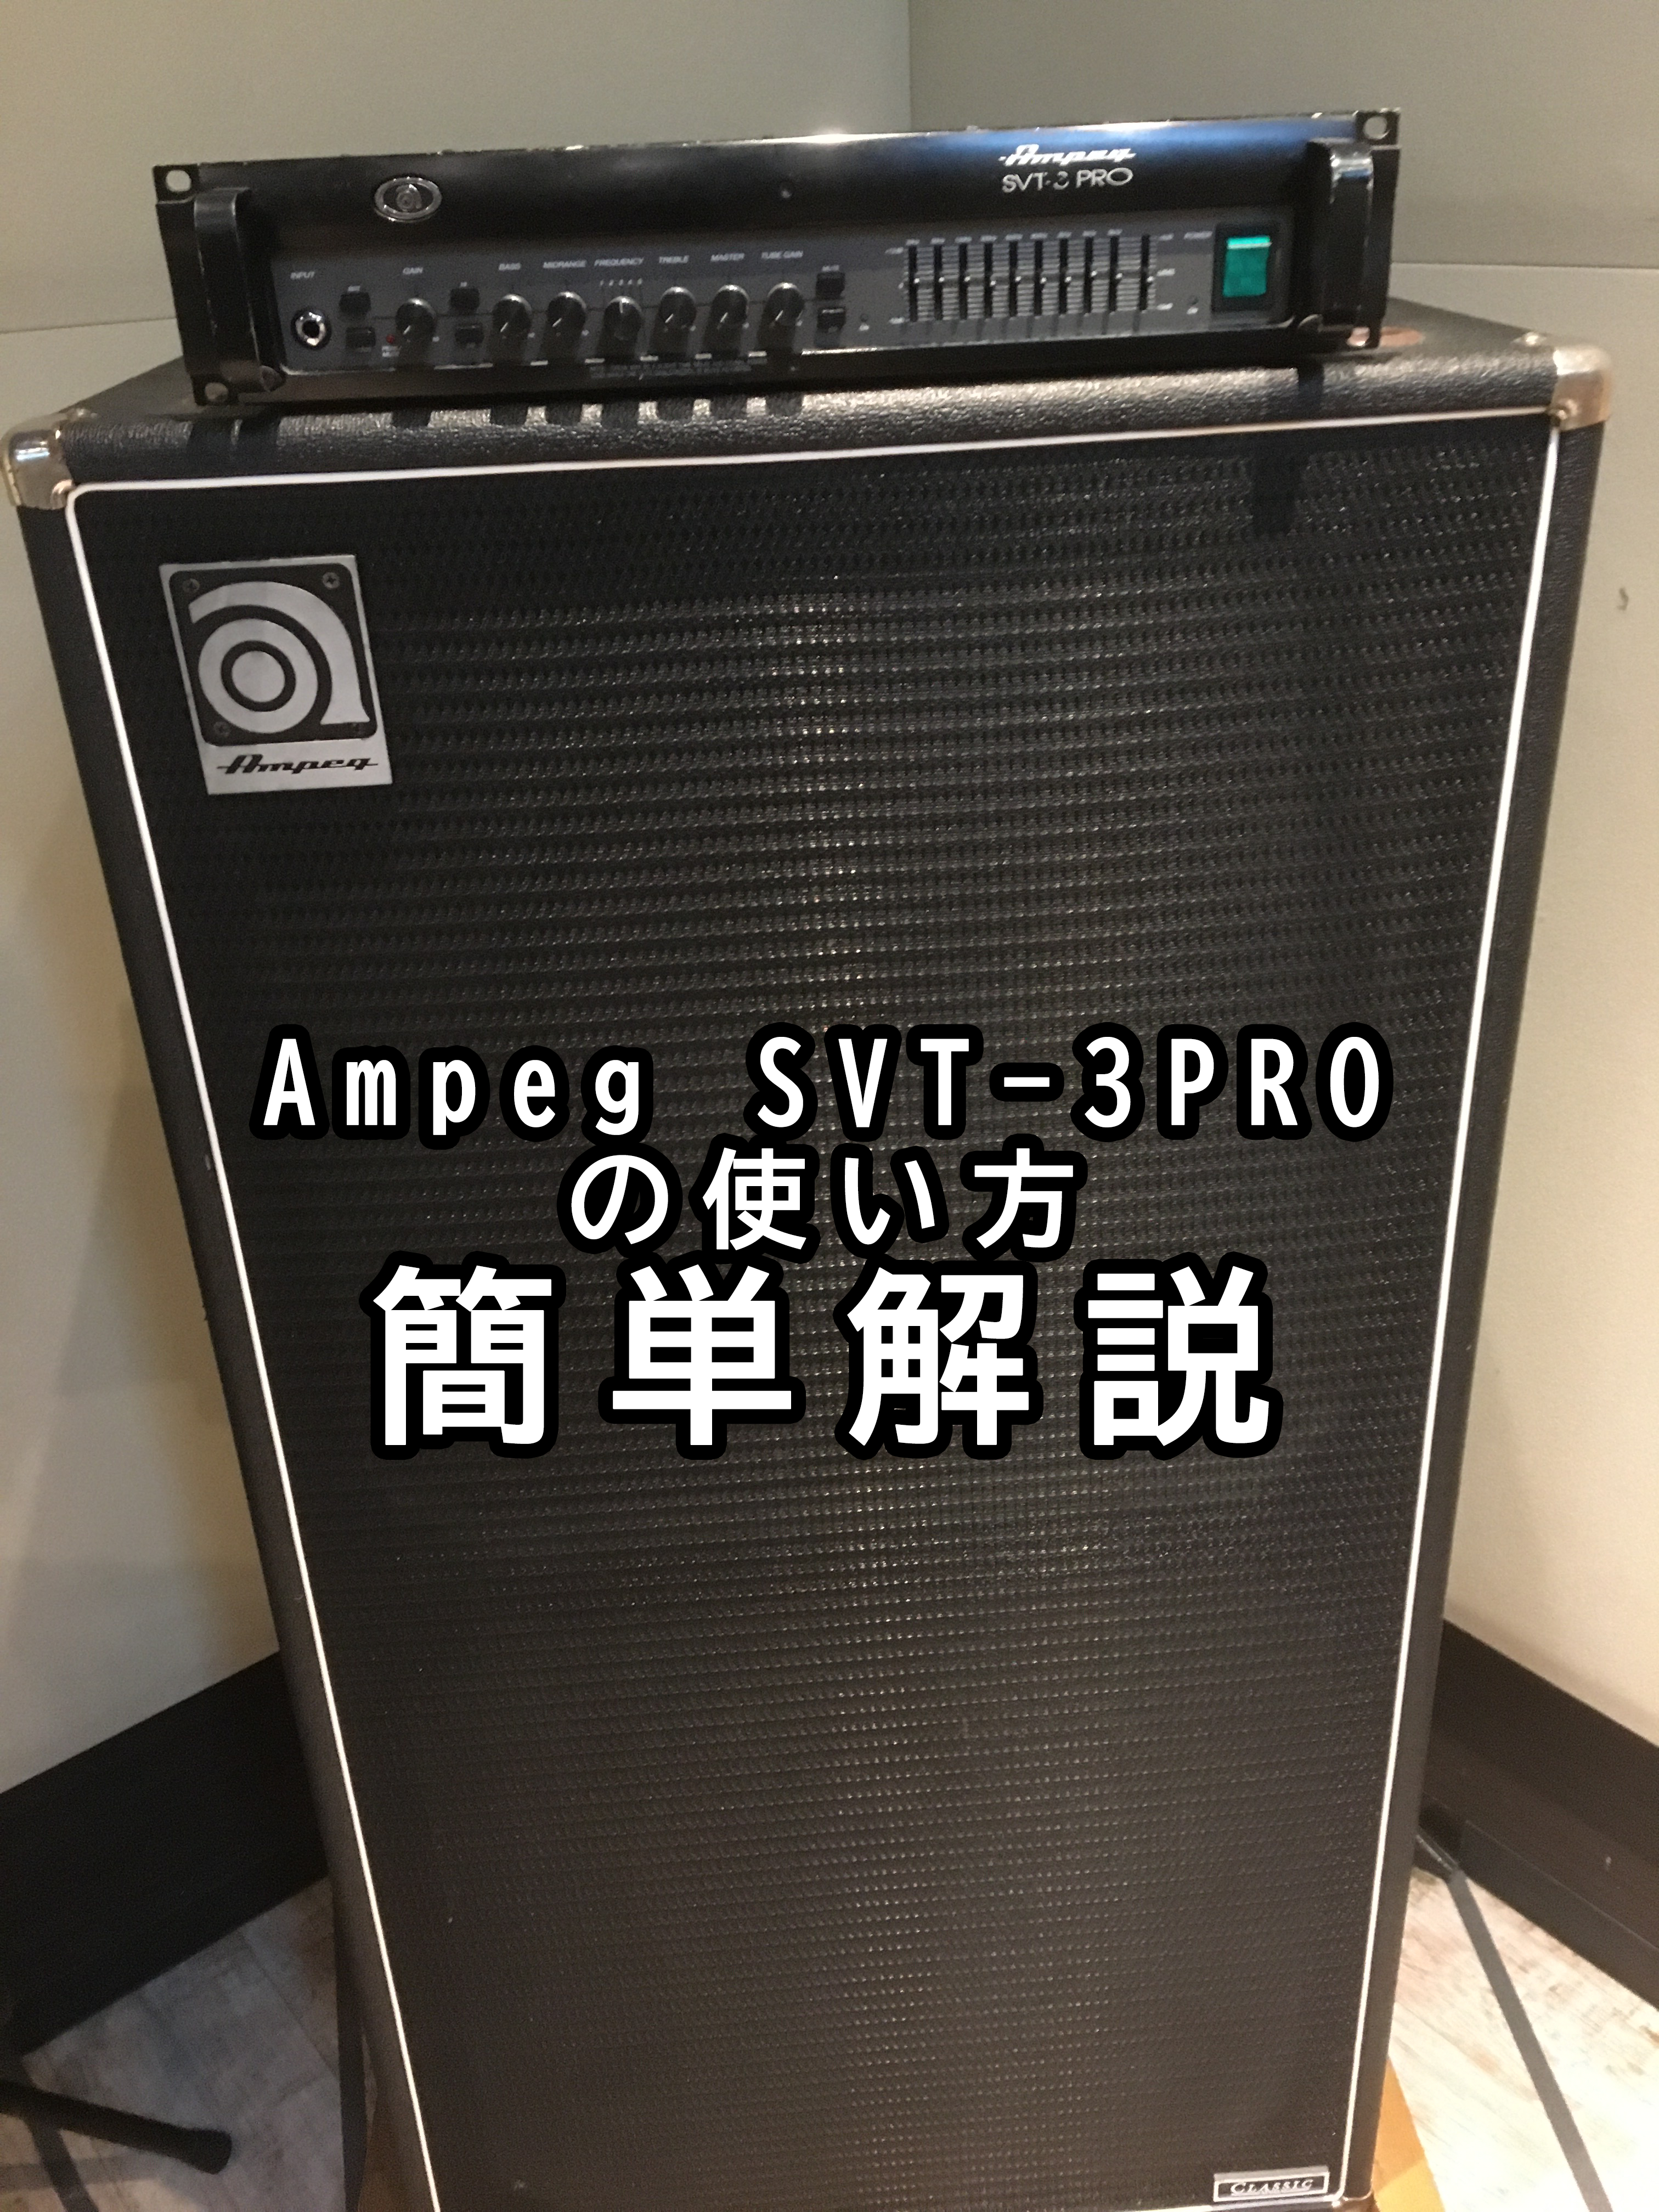 【激安・早い物勝ち】ampeg SVT-3Pro